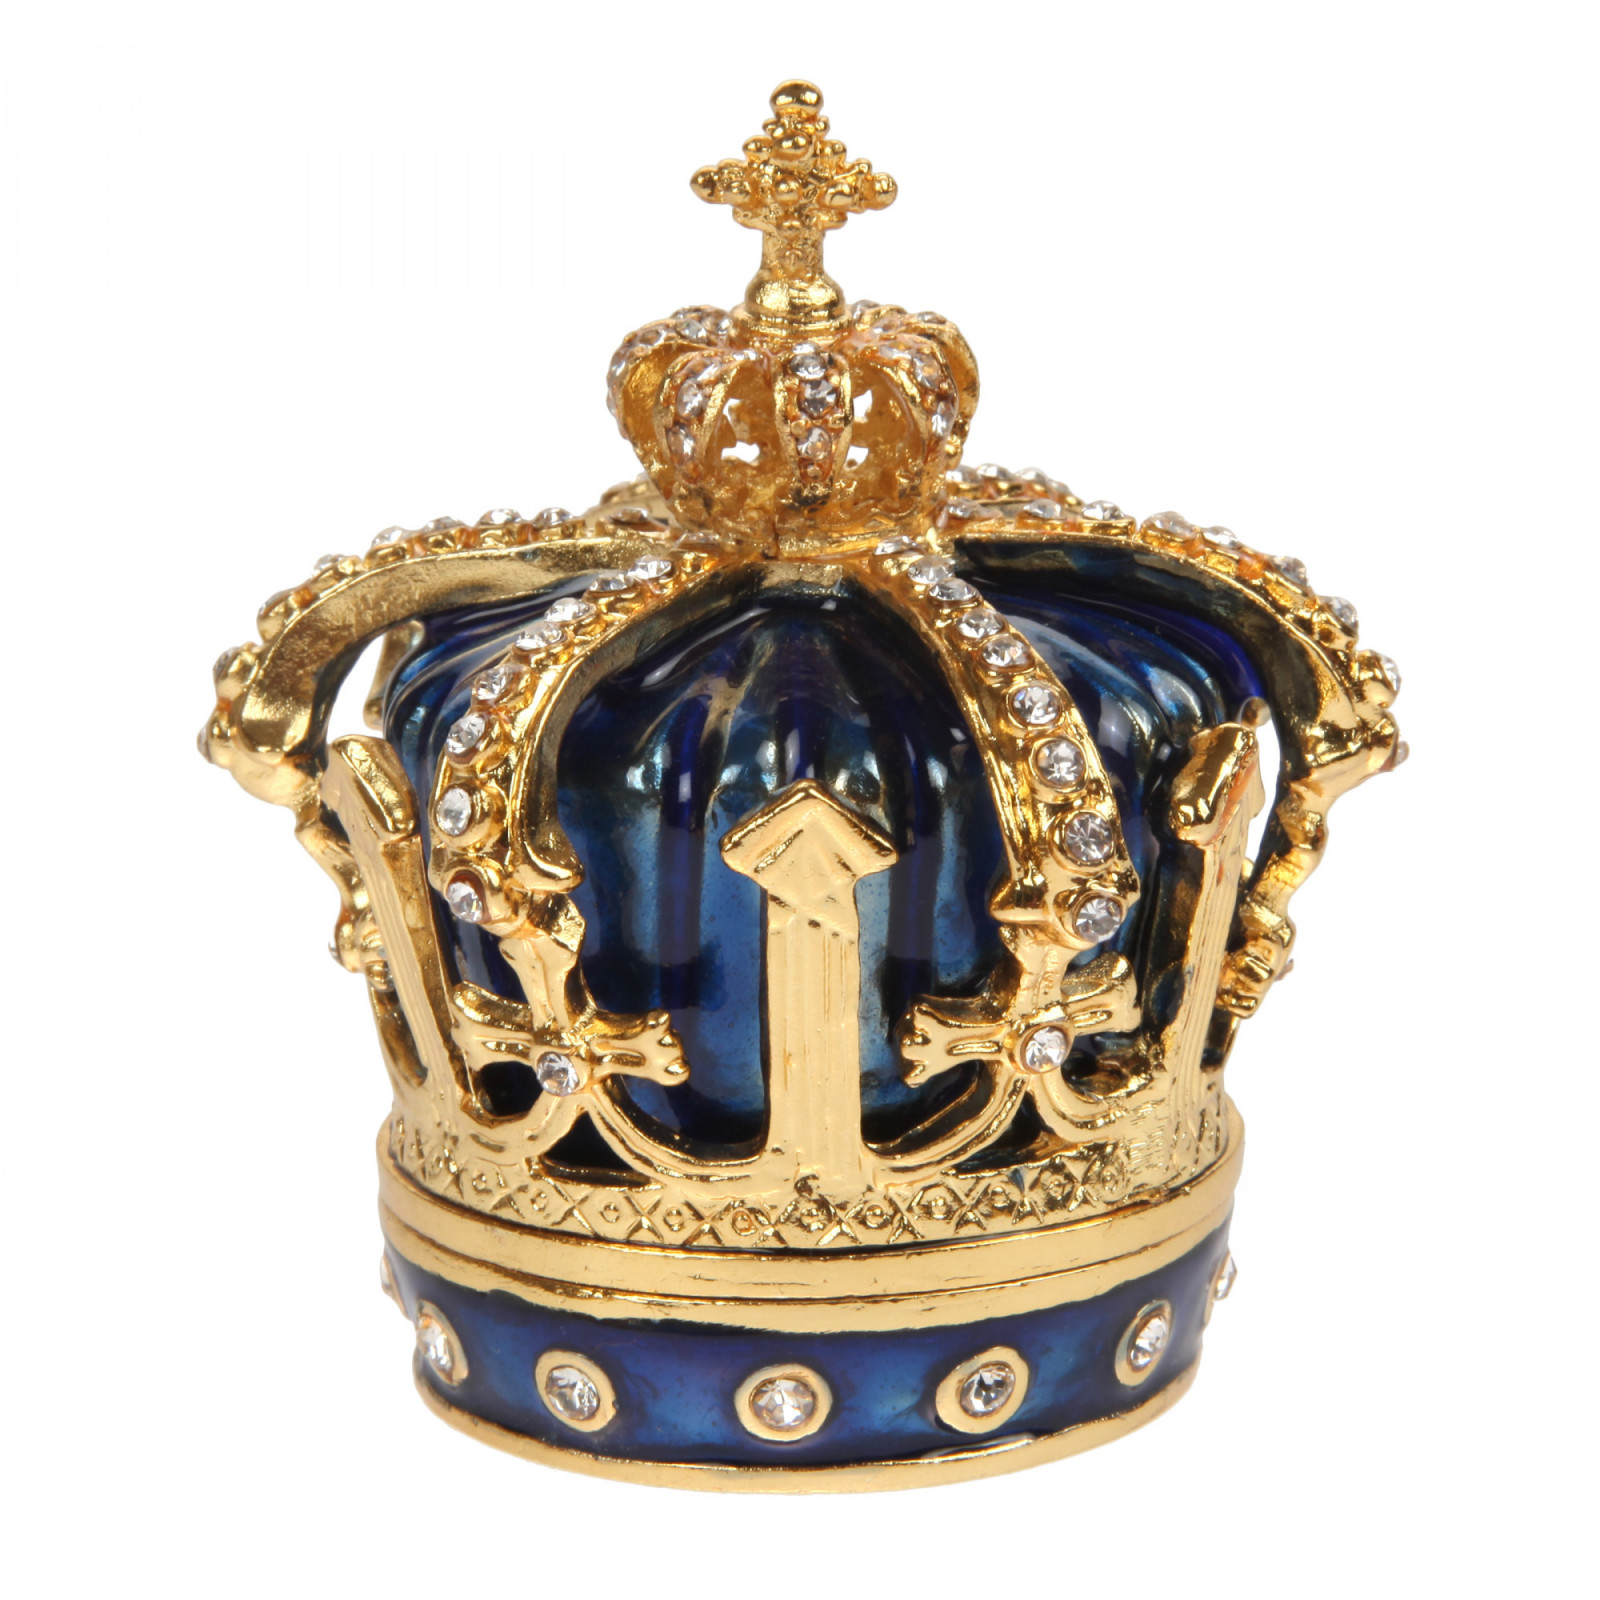 Шкатулка сувенирная в виде королевской короны,S-1653